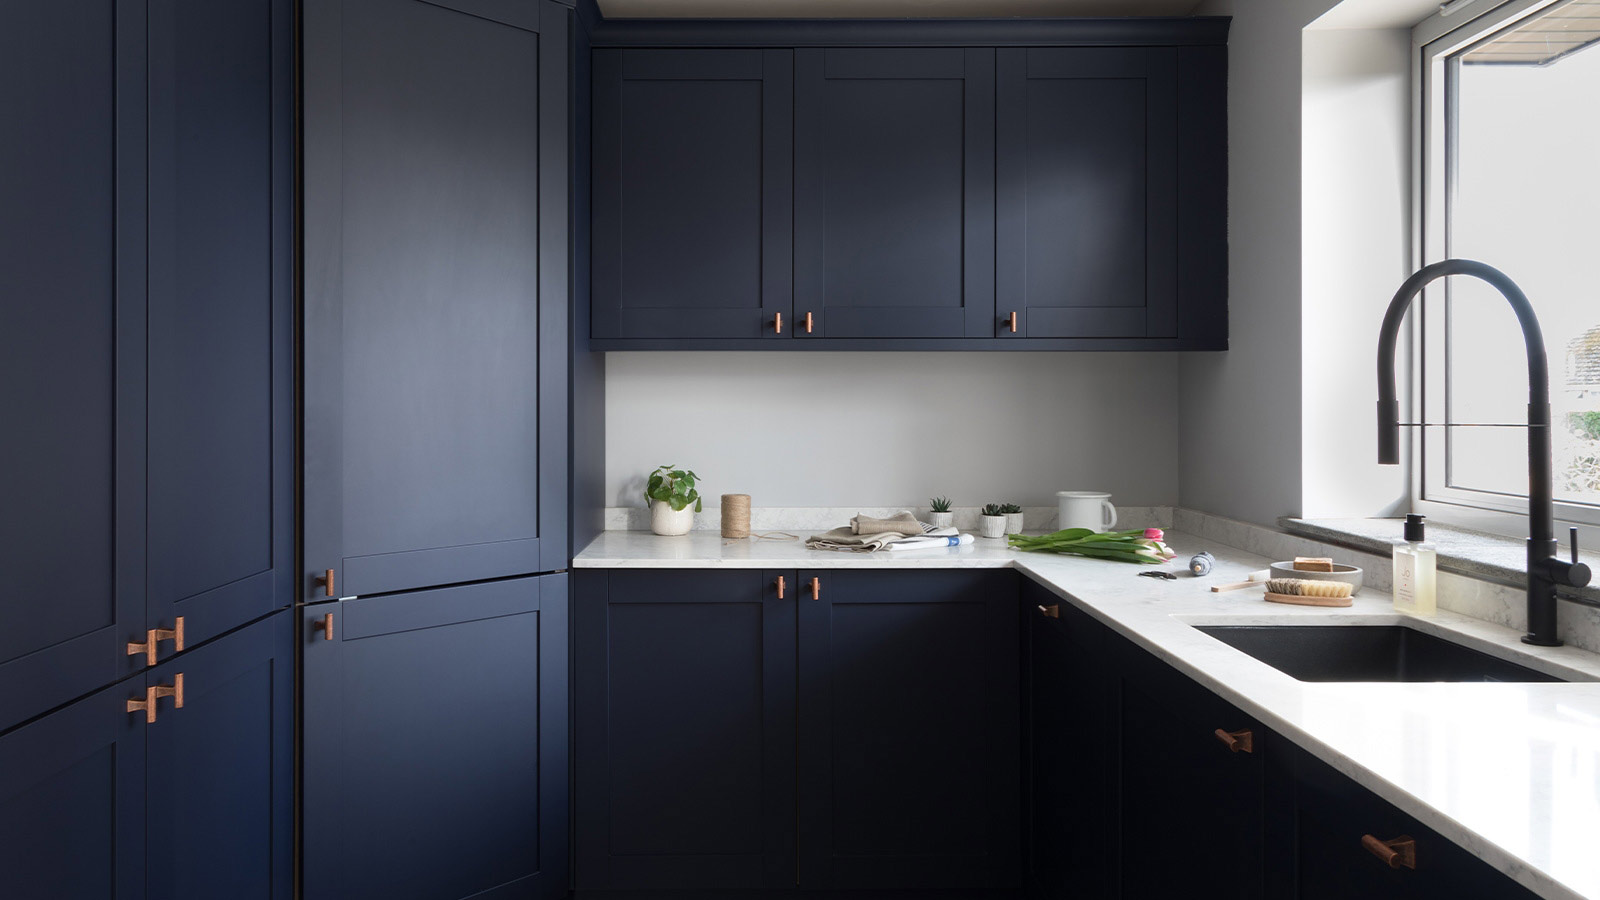 Utility room cupboards with dark blue doors